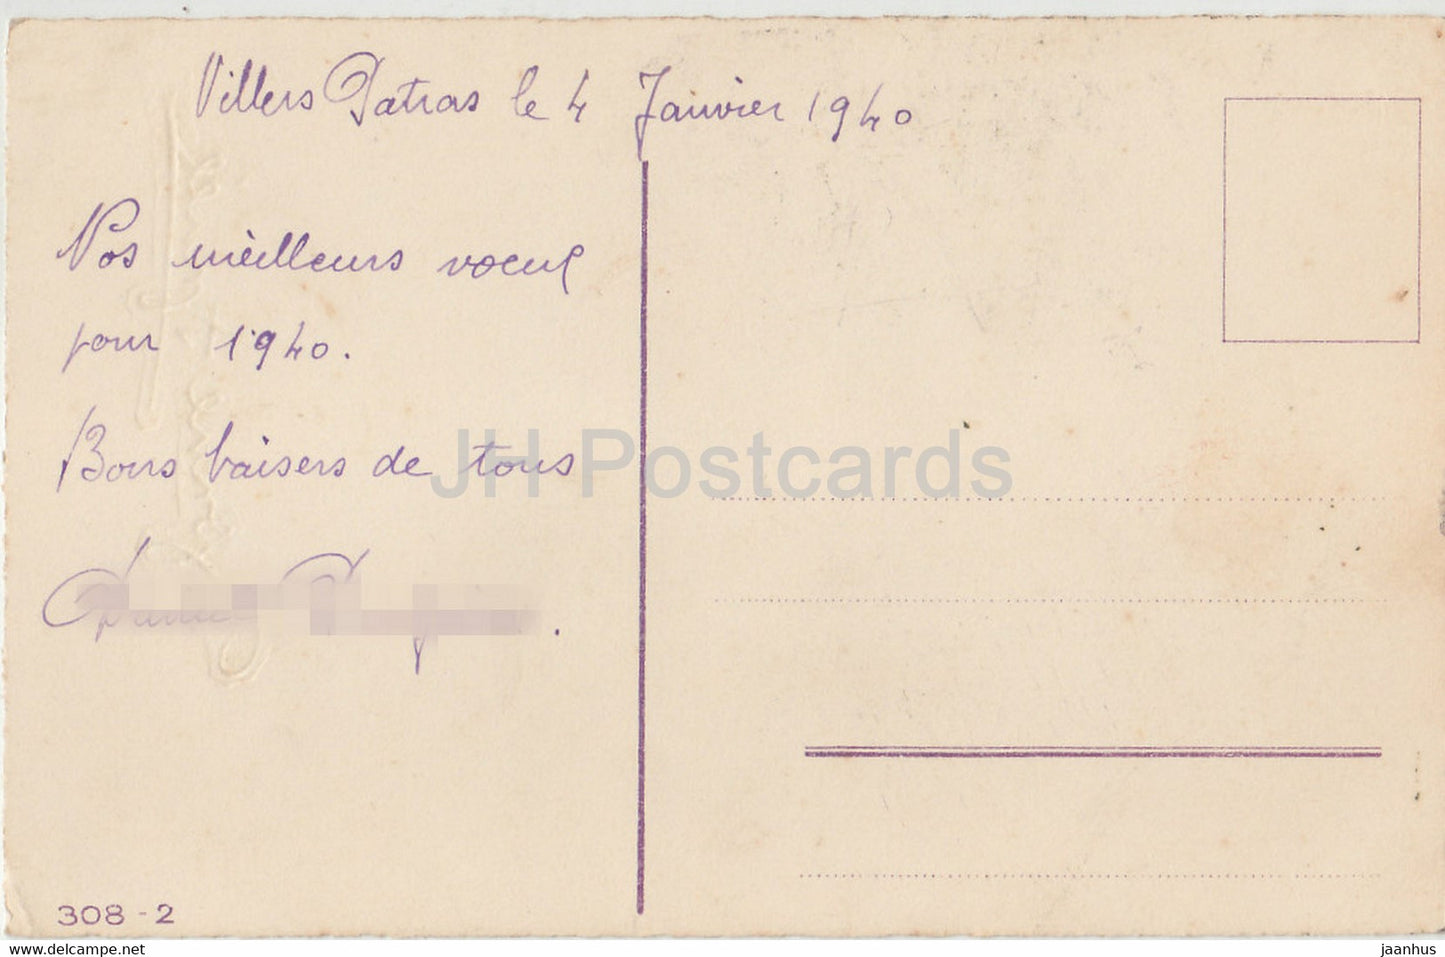 Carte de voeux anniversaire - Bonne Annee - fleurs - tulipes - 308-2 - illustration - carte postale ancienne - 1940 - France - occasion